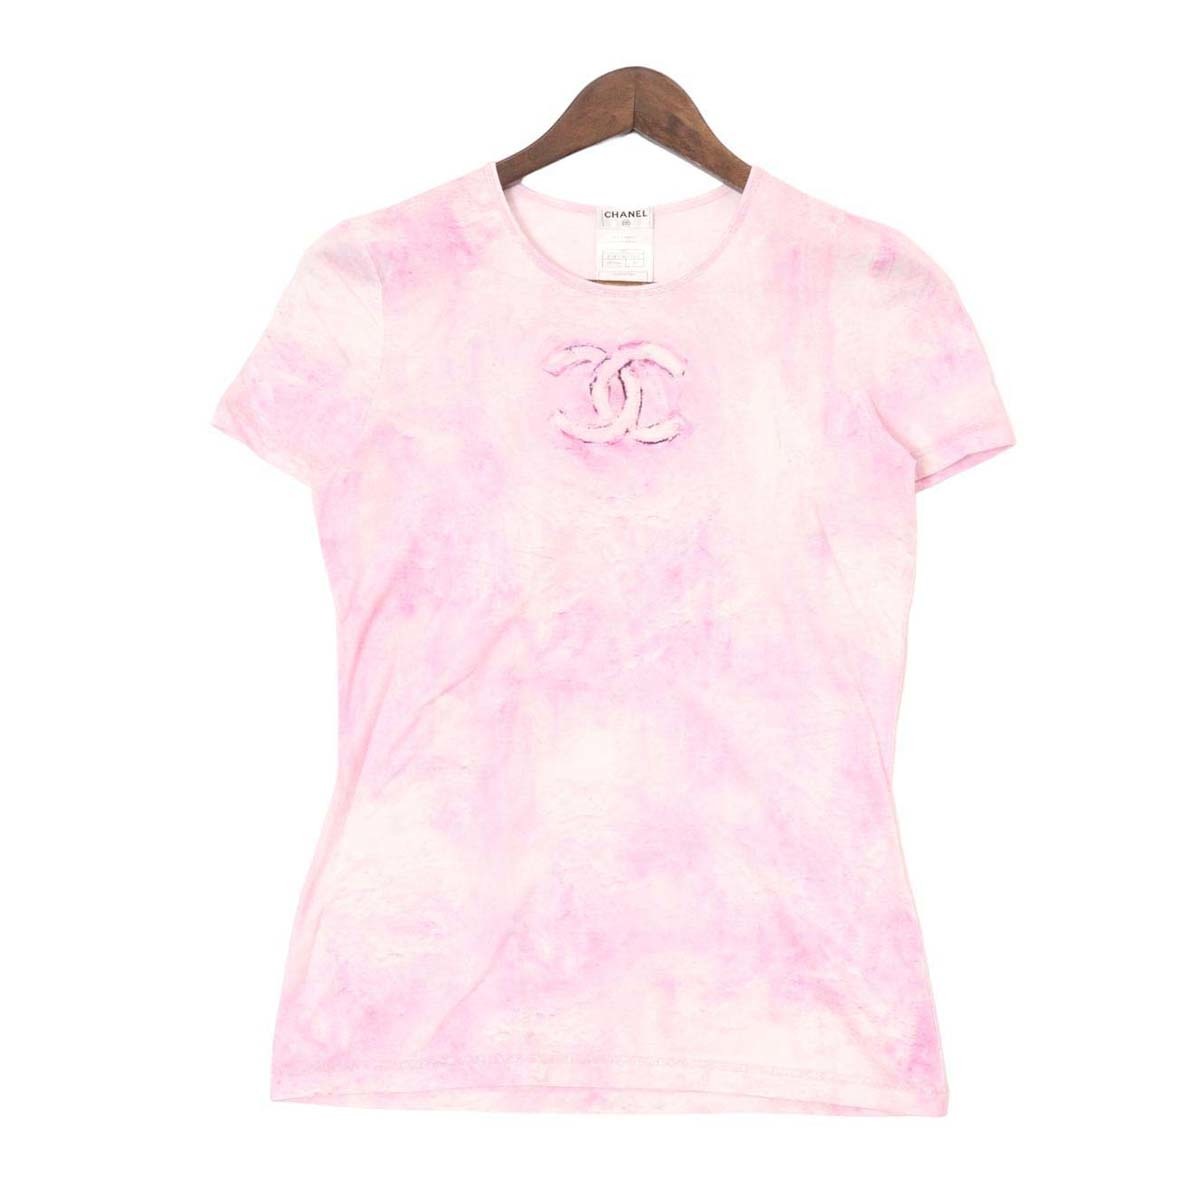 シャネル ココマーク 半袖Tシャツ P34611K02001 レディース ピンク CHANEL  【アパレル・小物】の返品方法を画像付きで解説！返品の条件や注意点なども